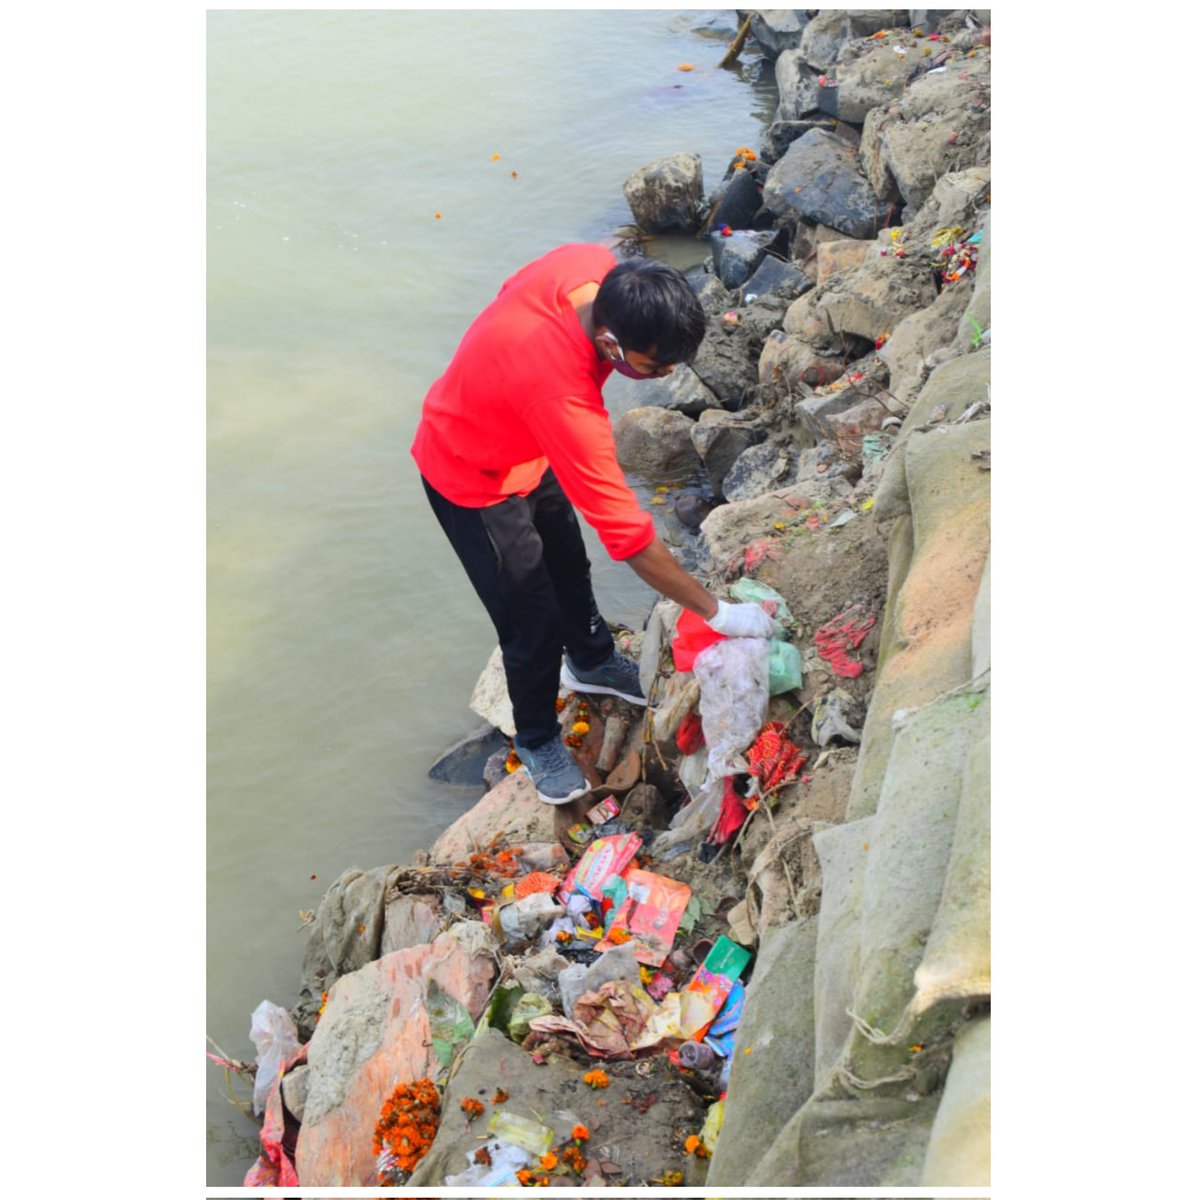 8th week of 'Ganga Cleanliness 'आप के पैर के नीचे क्या है ये जरूर ध्यान से देखे।इससे ये होगा कि जो अपने कदमों पर ध्यान नही देते,वे यह नही जान सकते कि उनका जीवन किस ओर जा रहा है। #plasticfree #plastics #Bethchange #plasticfreelife #Bihar #namaiganga #Gangasafai #Plasticfreeganga